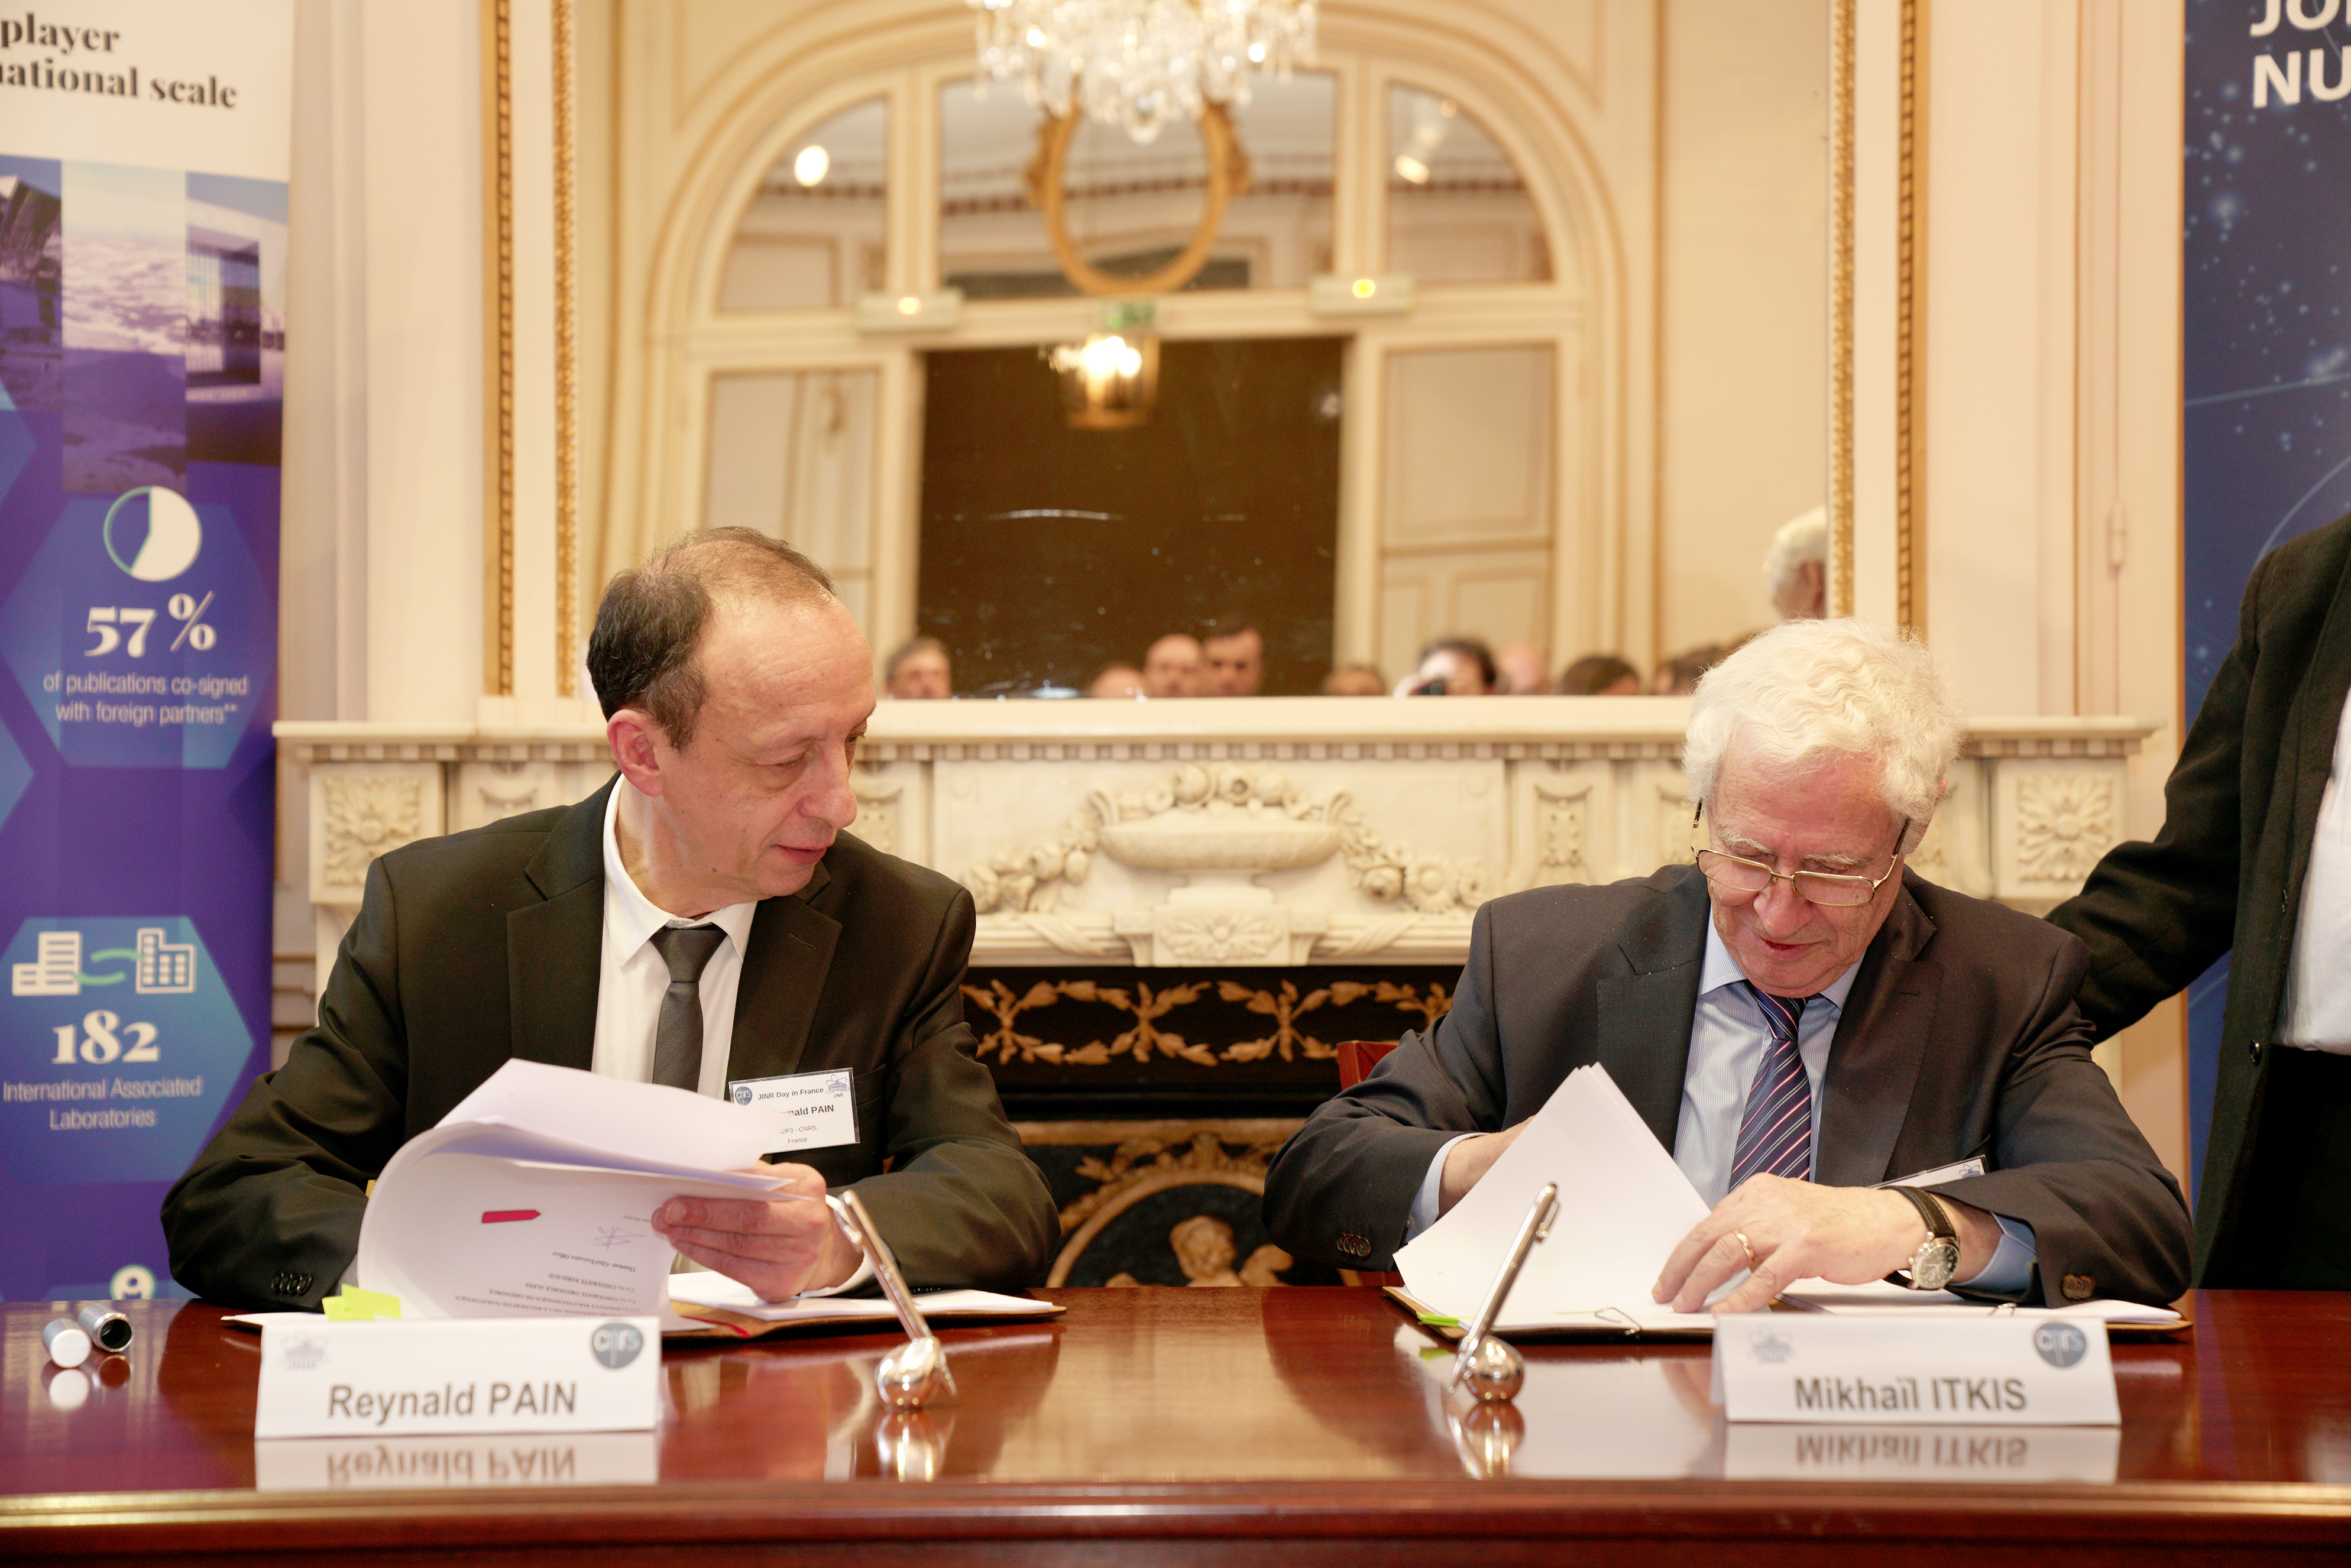 Reynald Pain et Mikhail Itkis assis à un bureau signe des documents.